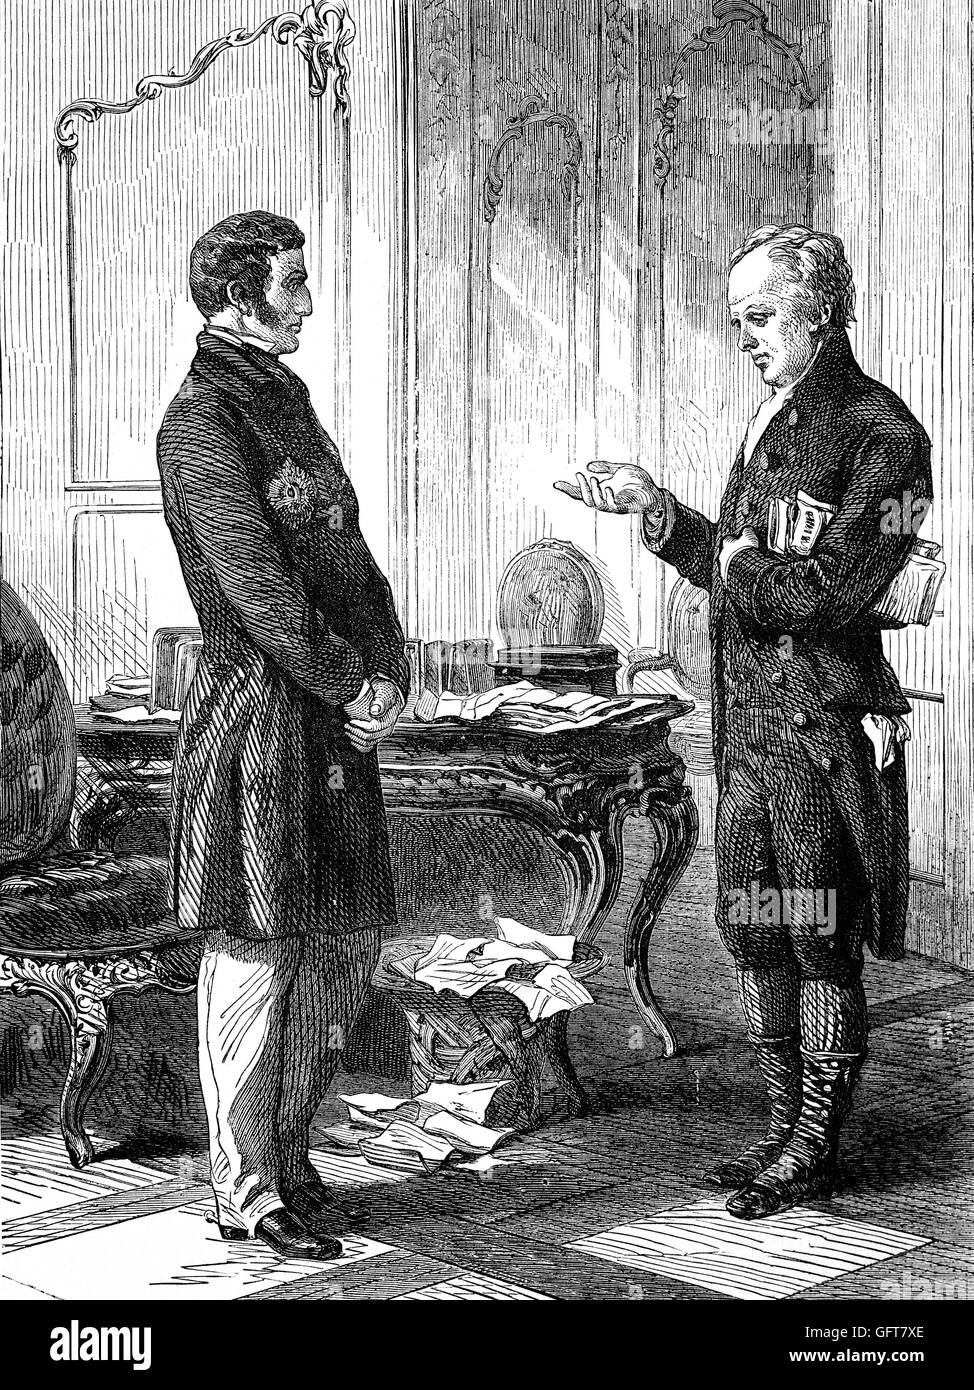 William Allen (1770 FRS FGS FLS - 1843) rencontre le duc de Wellington. Allen était un scientifique anglais et philanthrope qui s'est opposé à l'esclavage et engagés dans des programmes d'amélioration sociale et pénale au début du xixe siècle en Angleterre. Banque D'Images